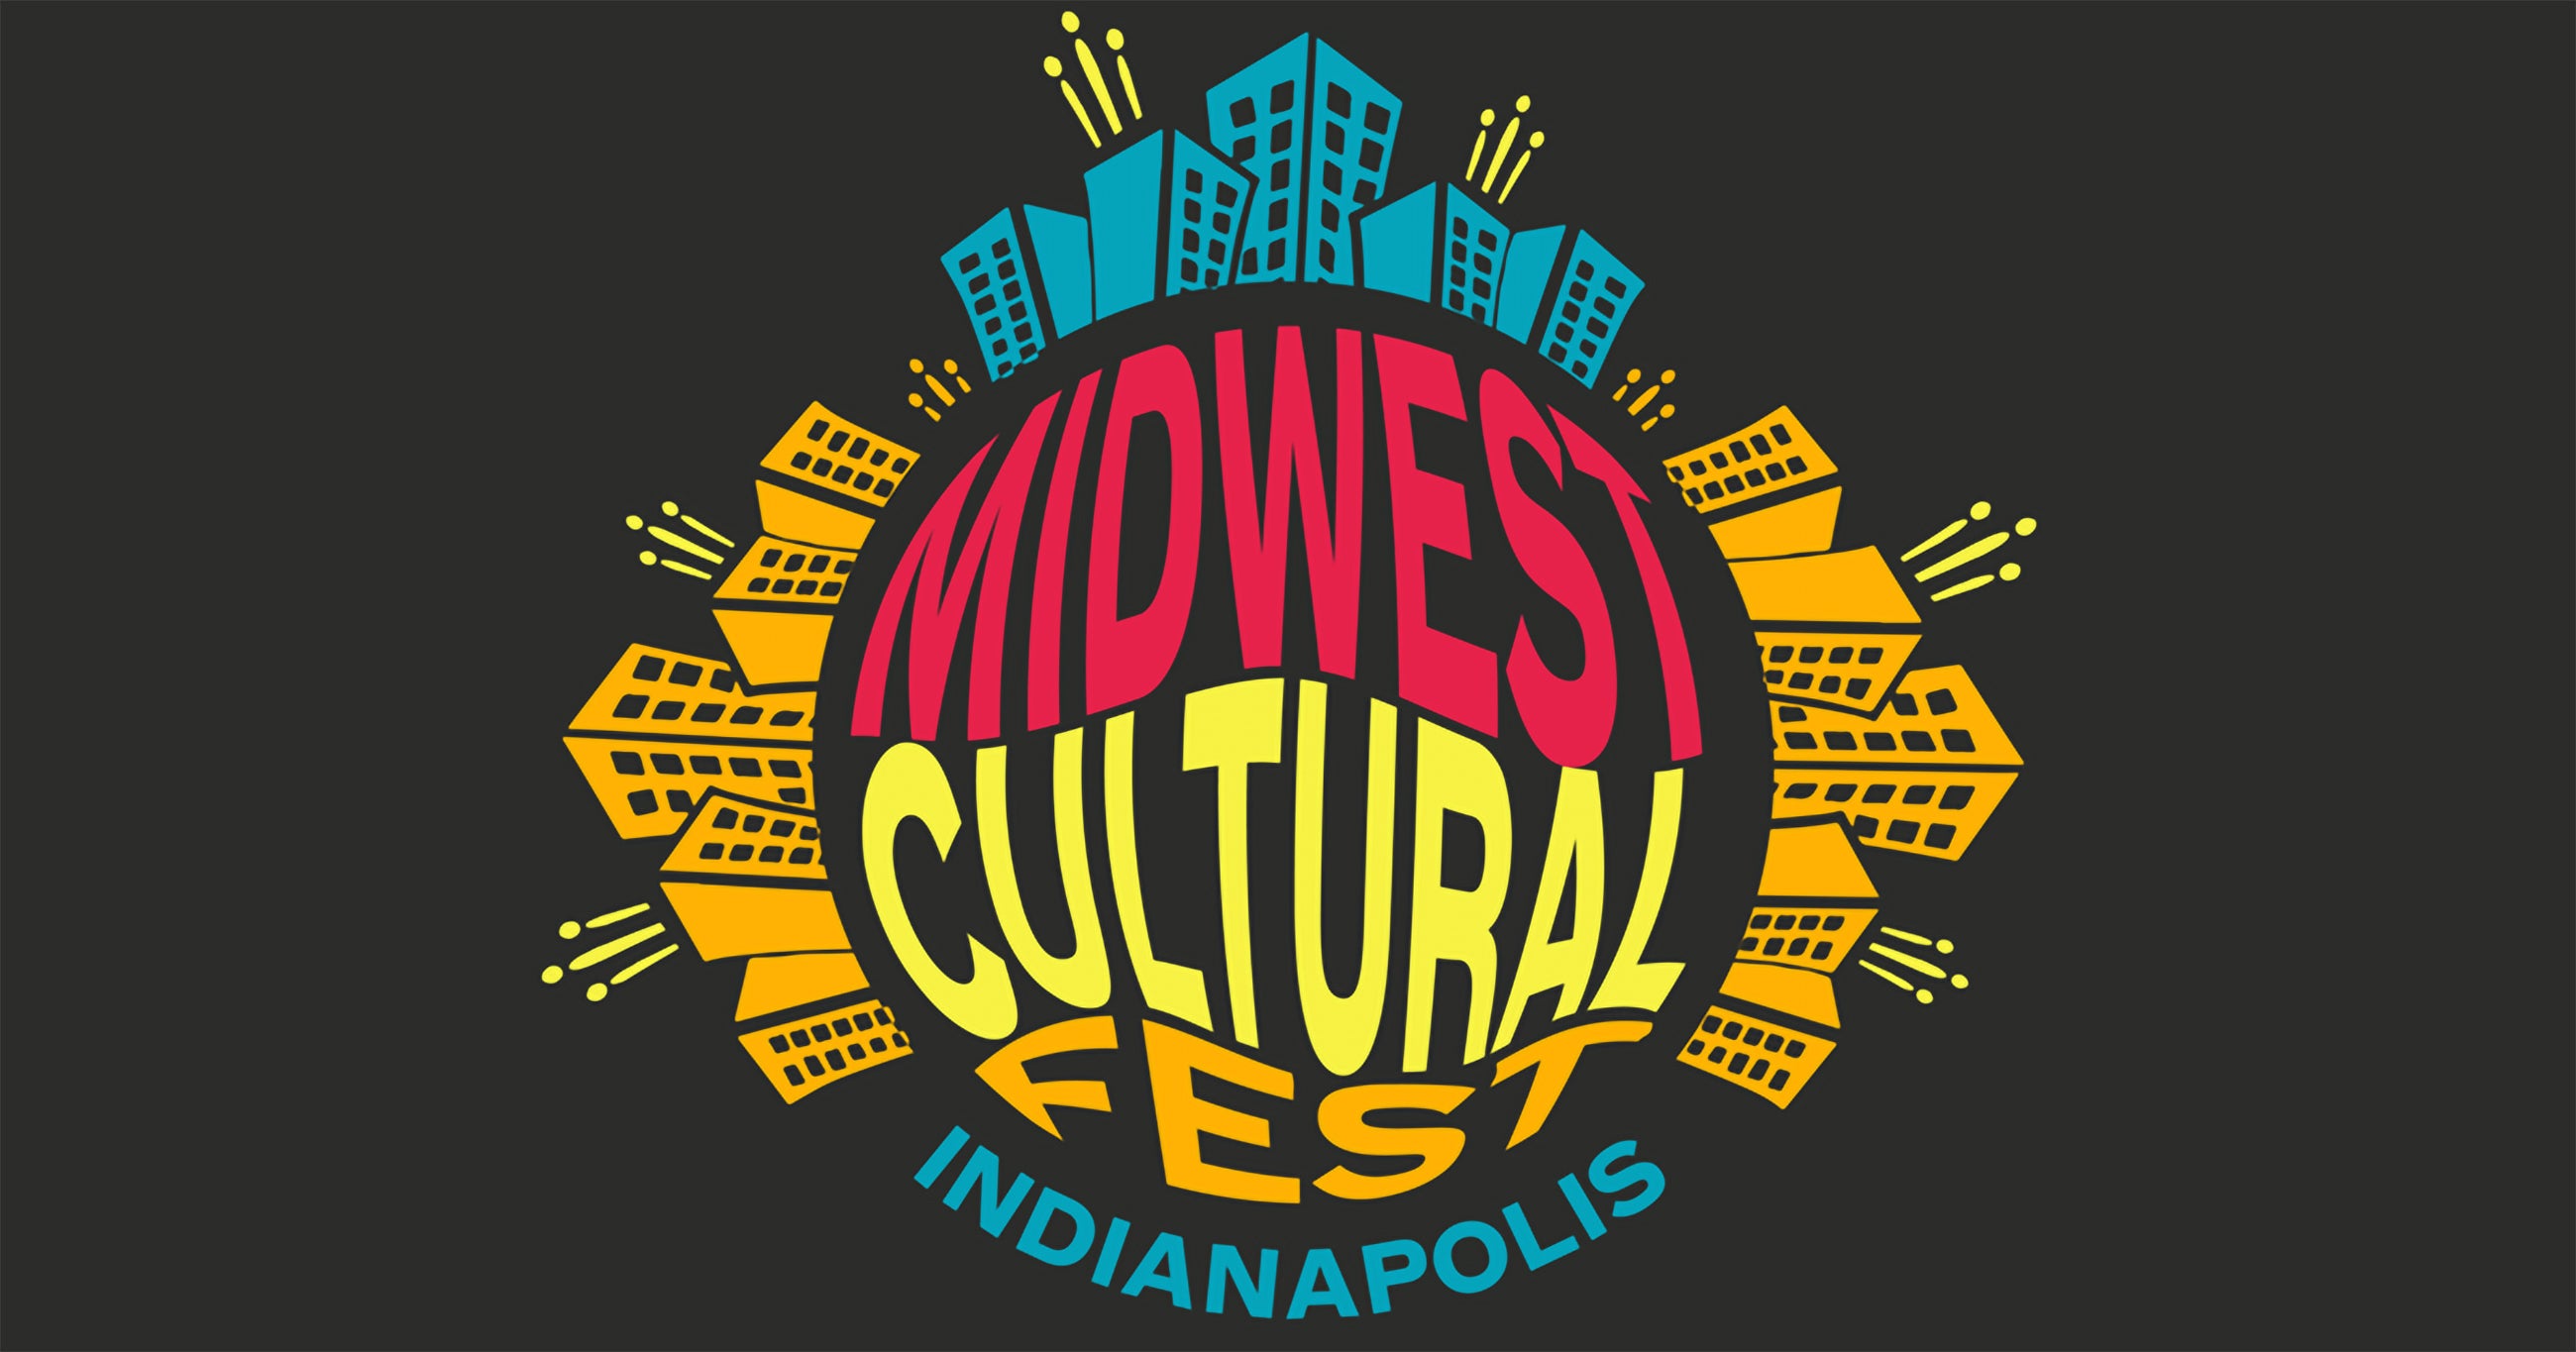 Midwest Cultural Fest presale information on freepresalepasswords.com